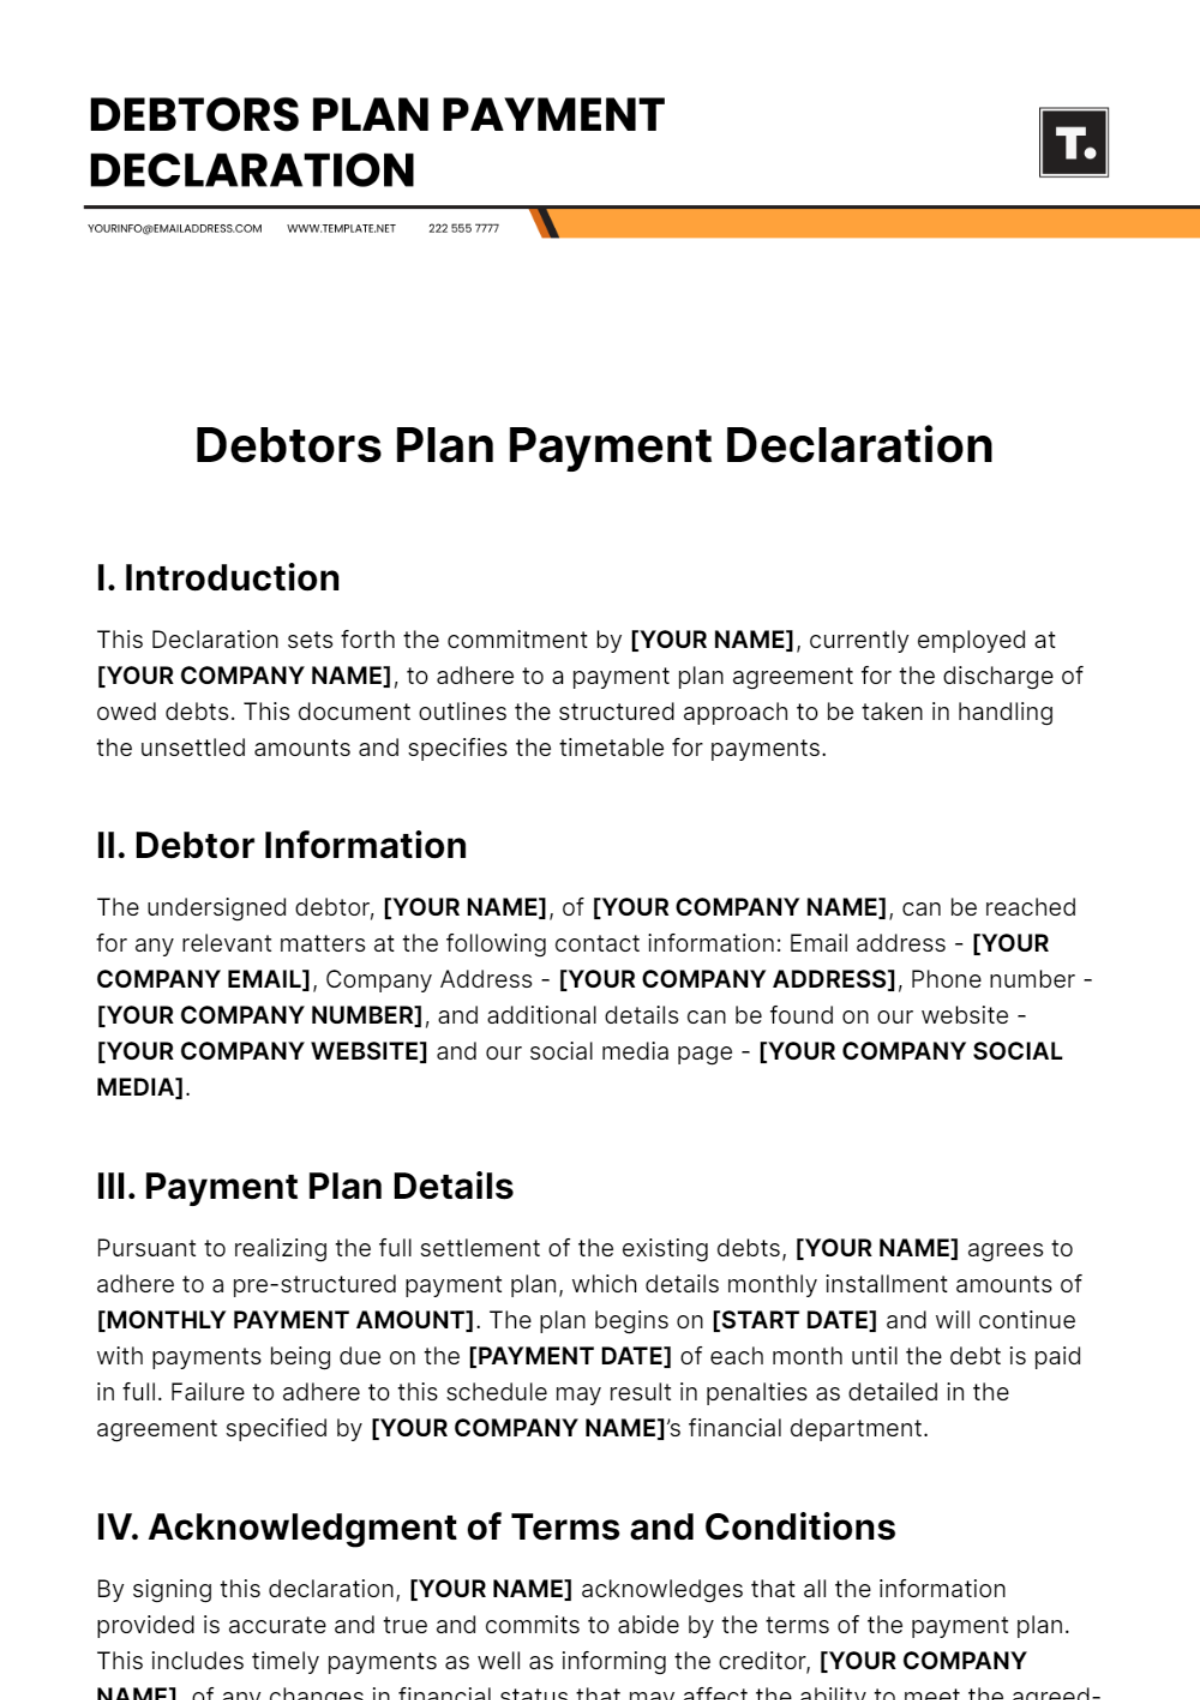 Debtors Plan Payment Declaration Template